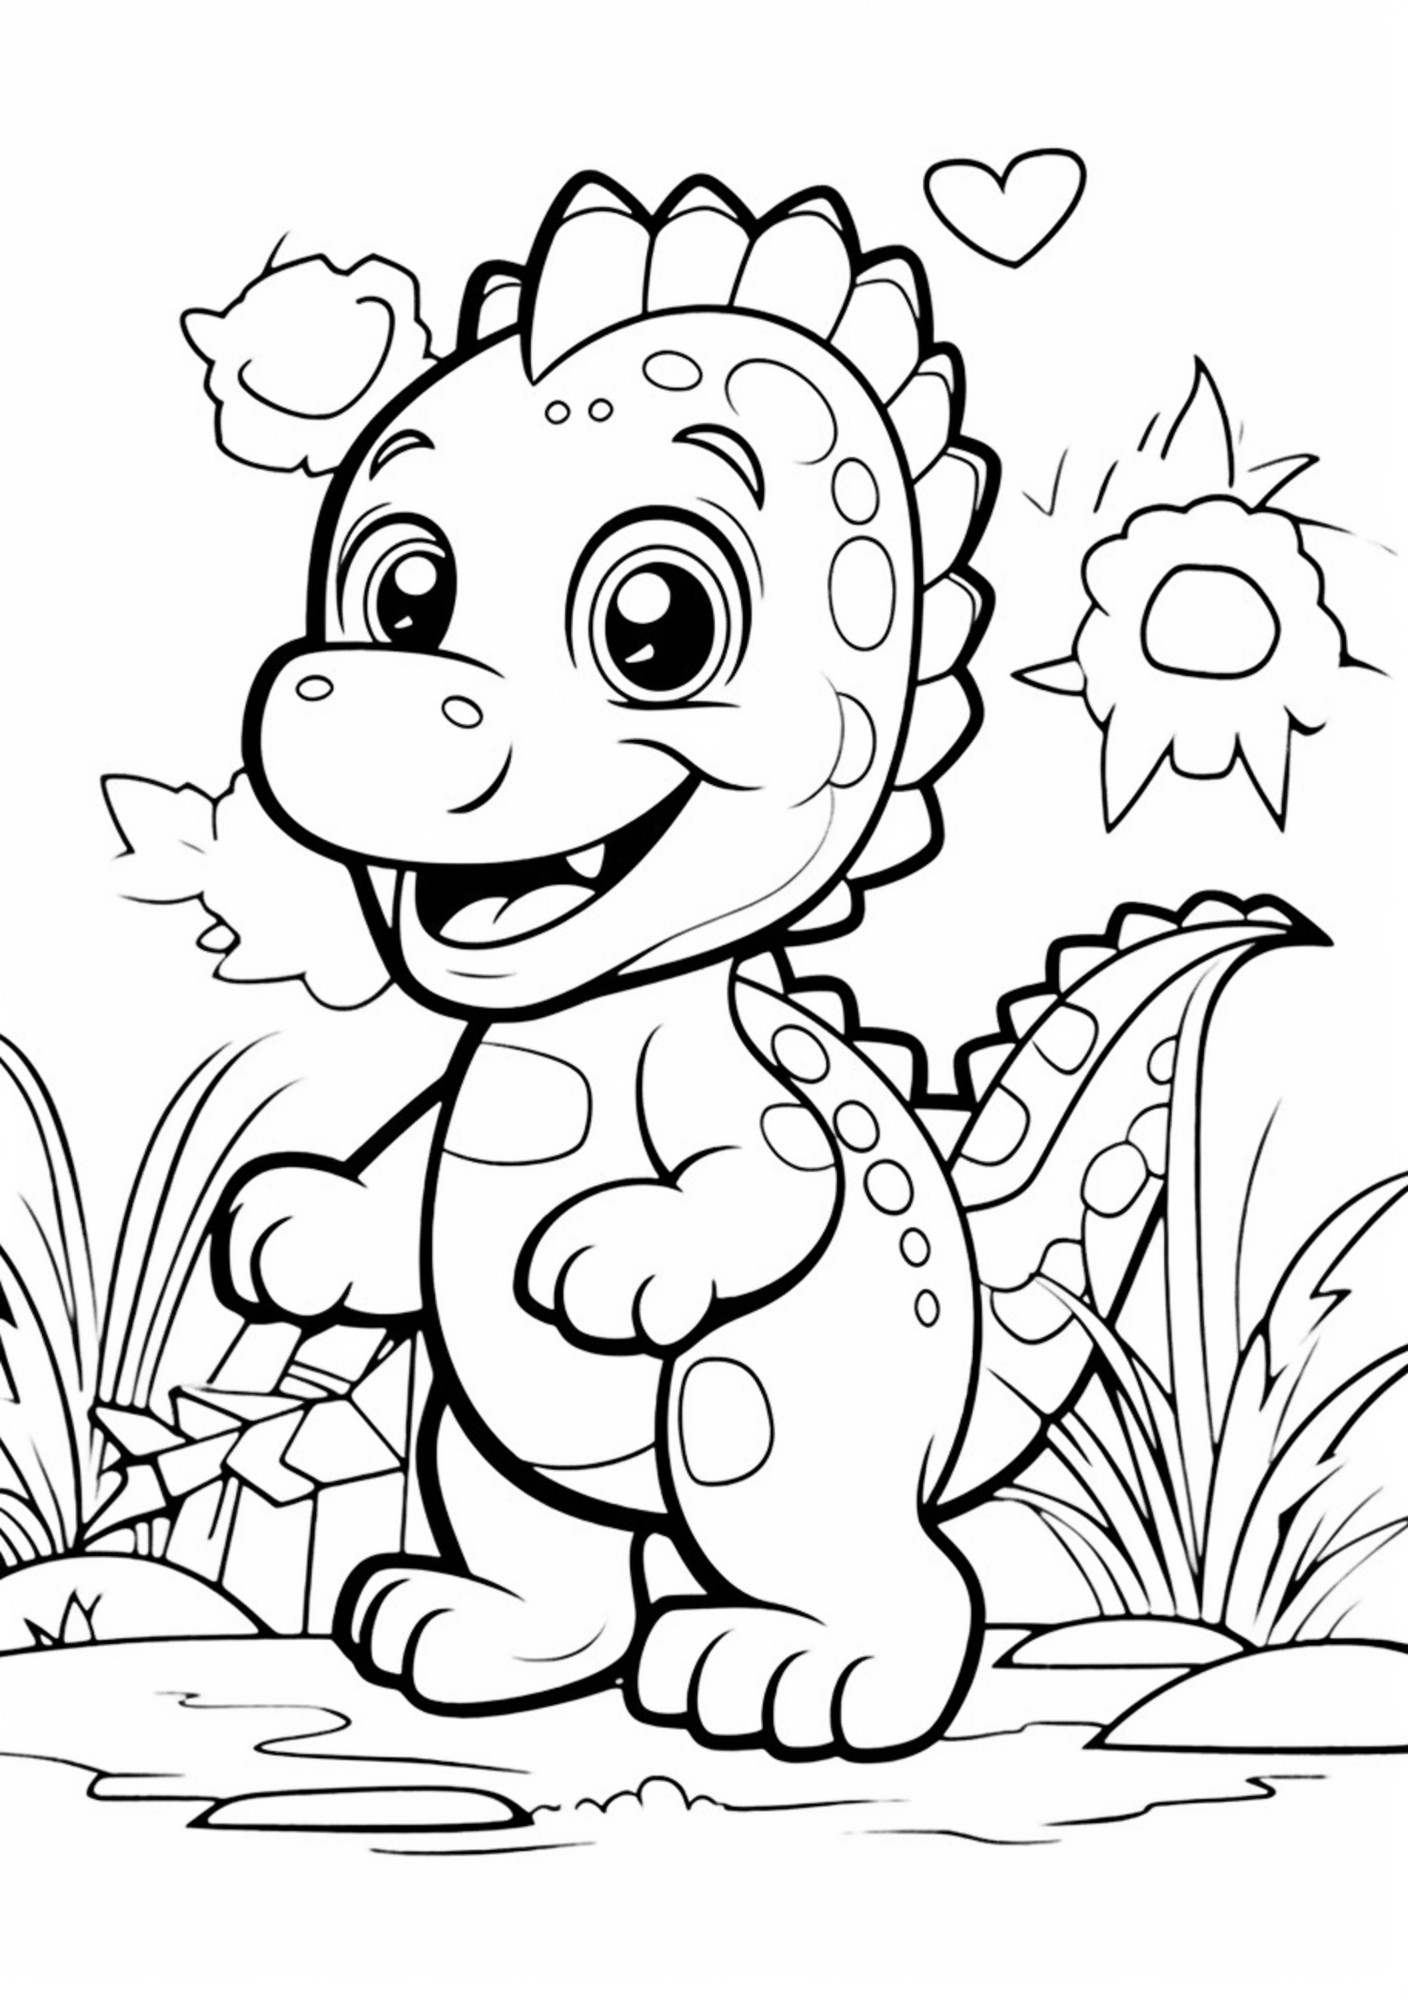 Раскраска для детей: дружелюбный динозавр